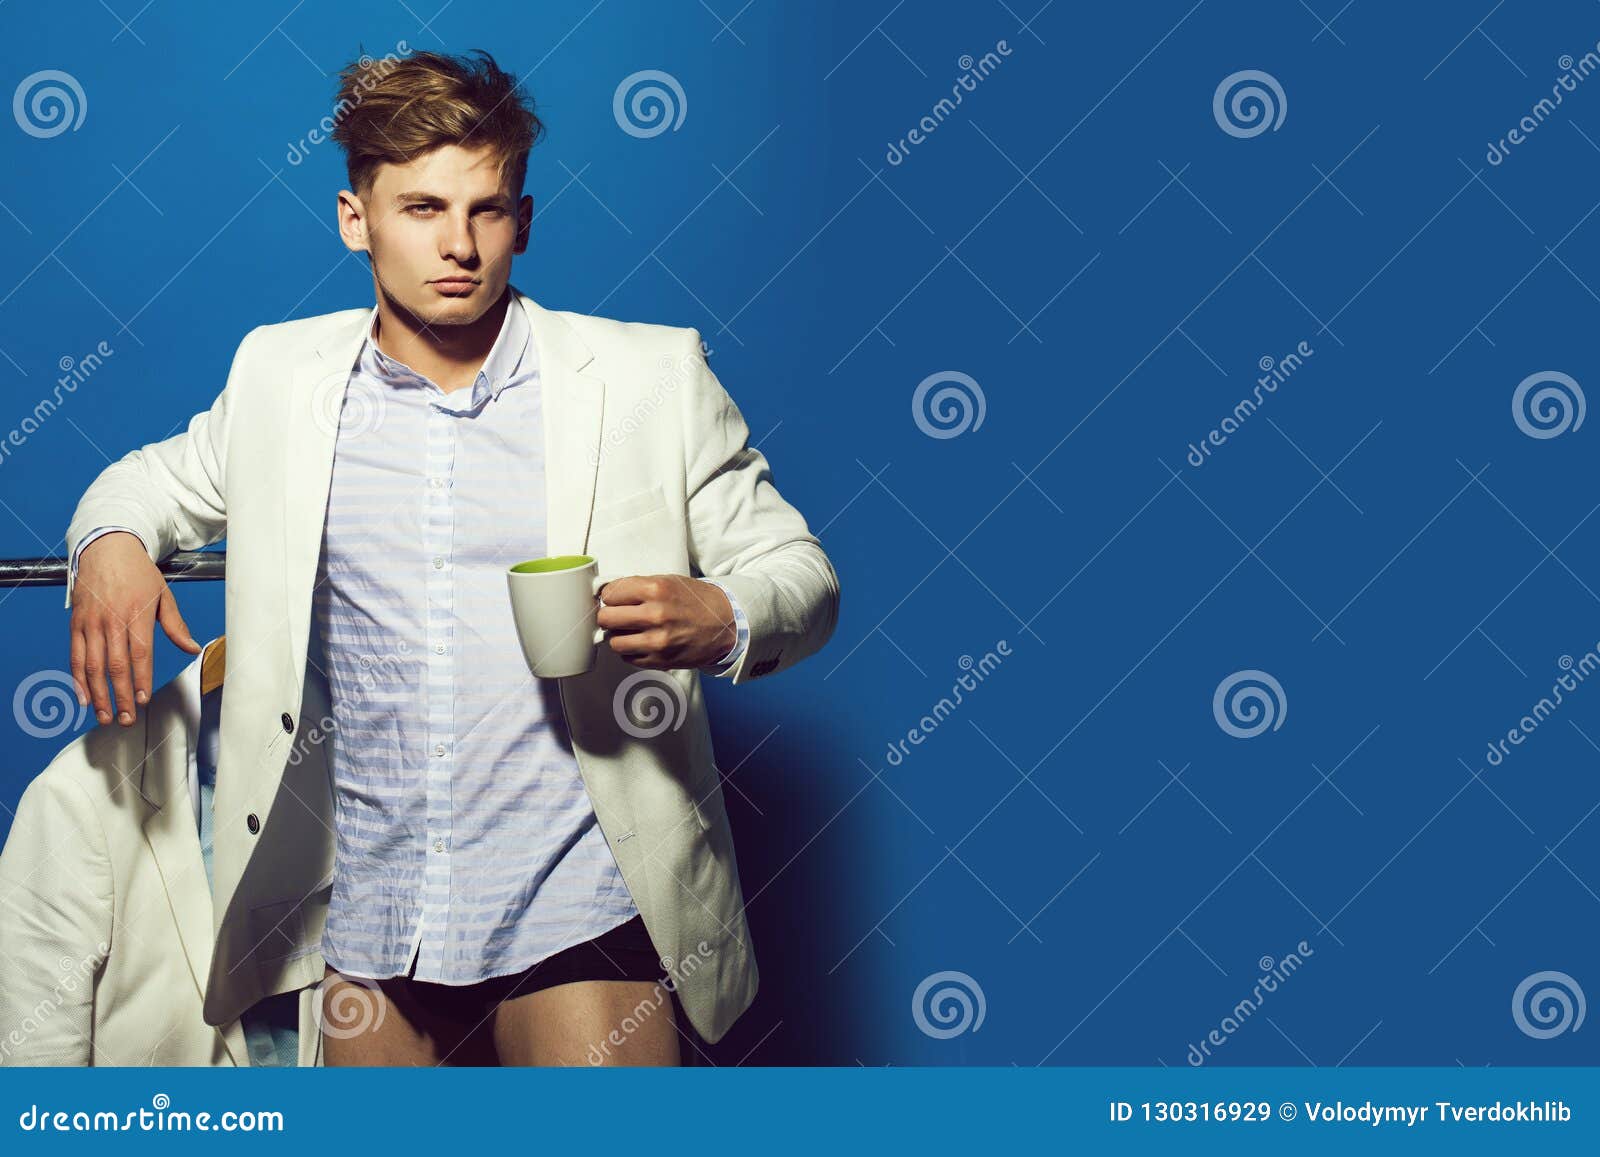 Guy in Wardrobe on Blue Background. Stock Image - Image of wardrobe ...